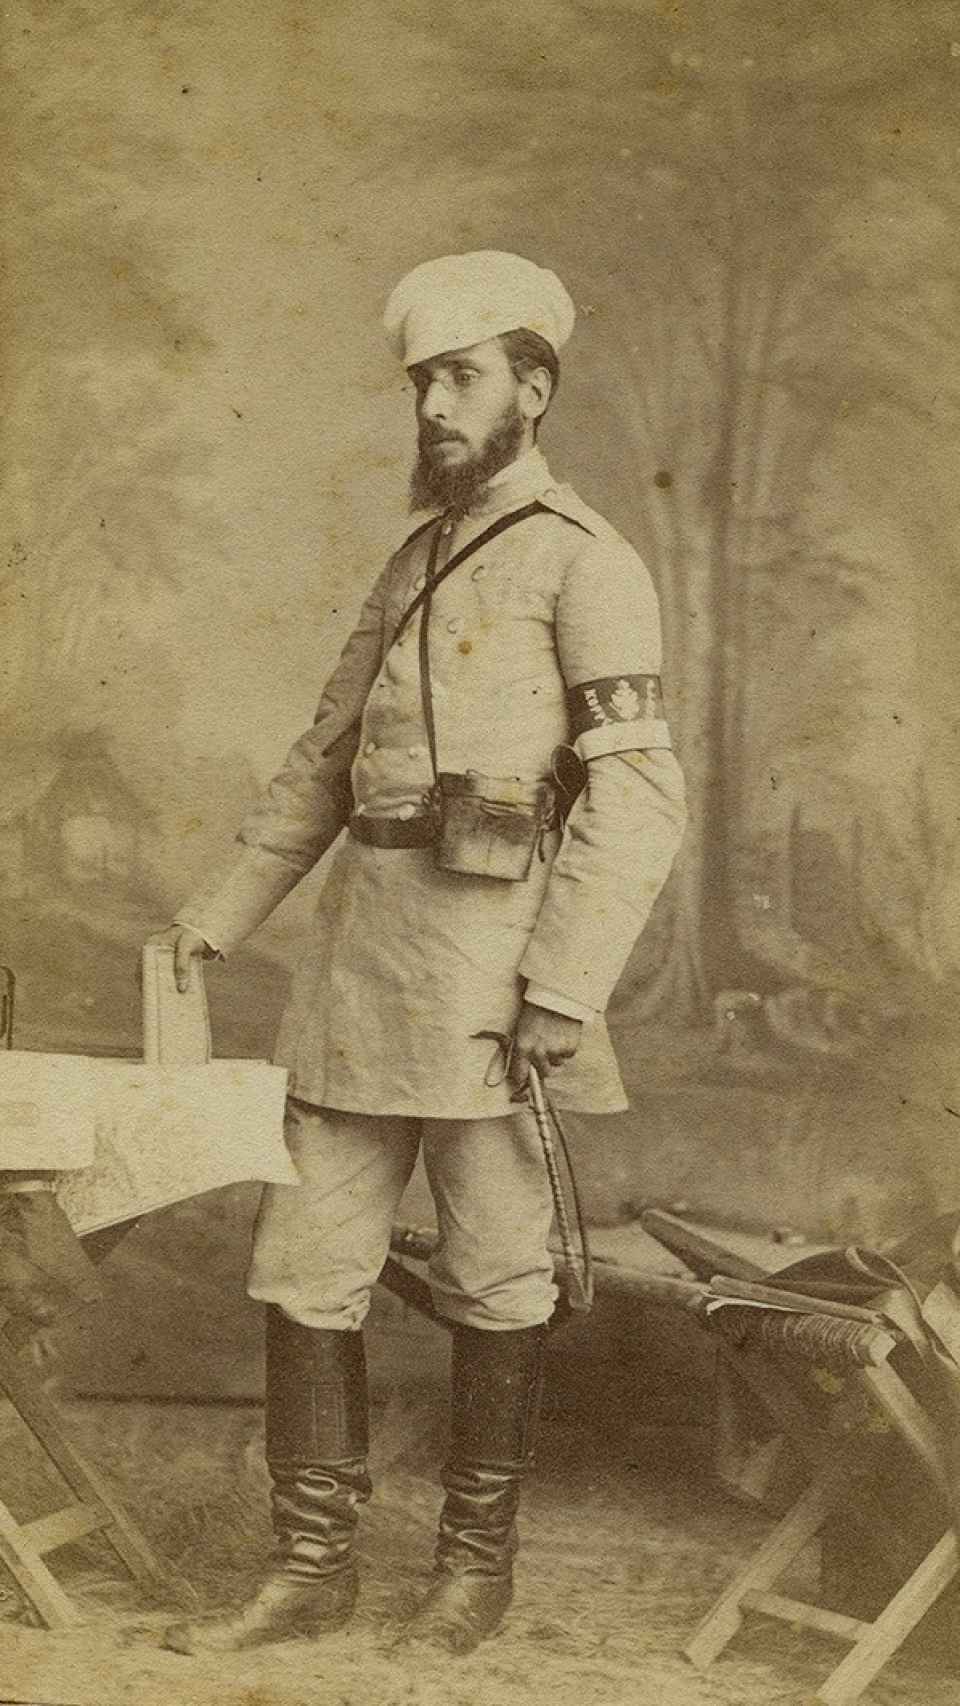 Retrato de Pellicer durante la guerra ruso-turca en 1877